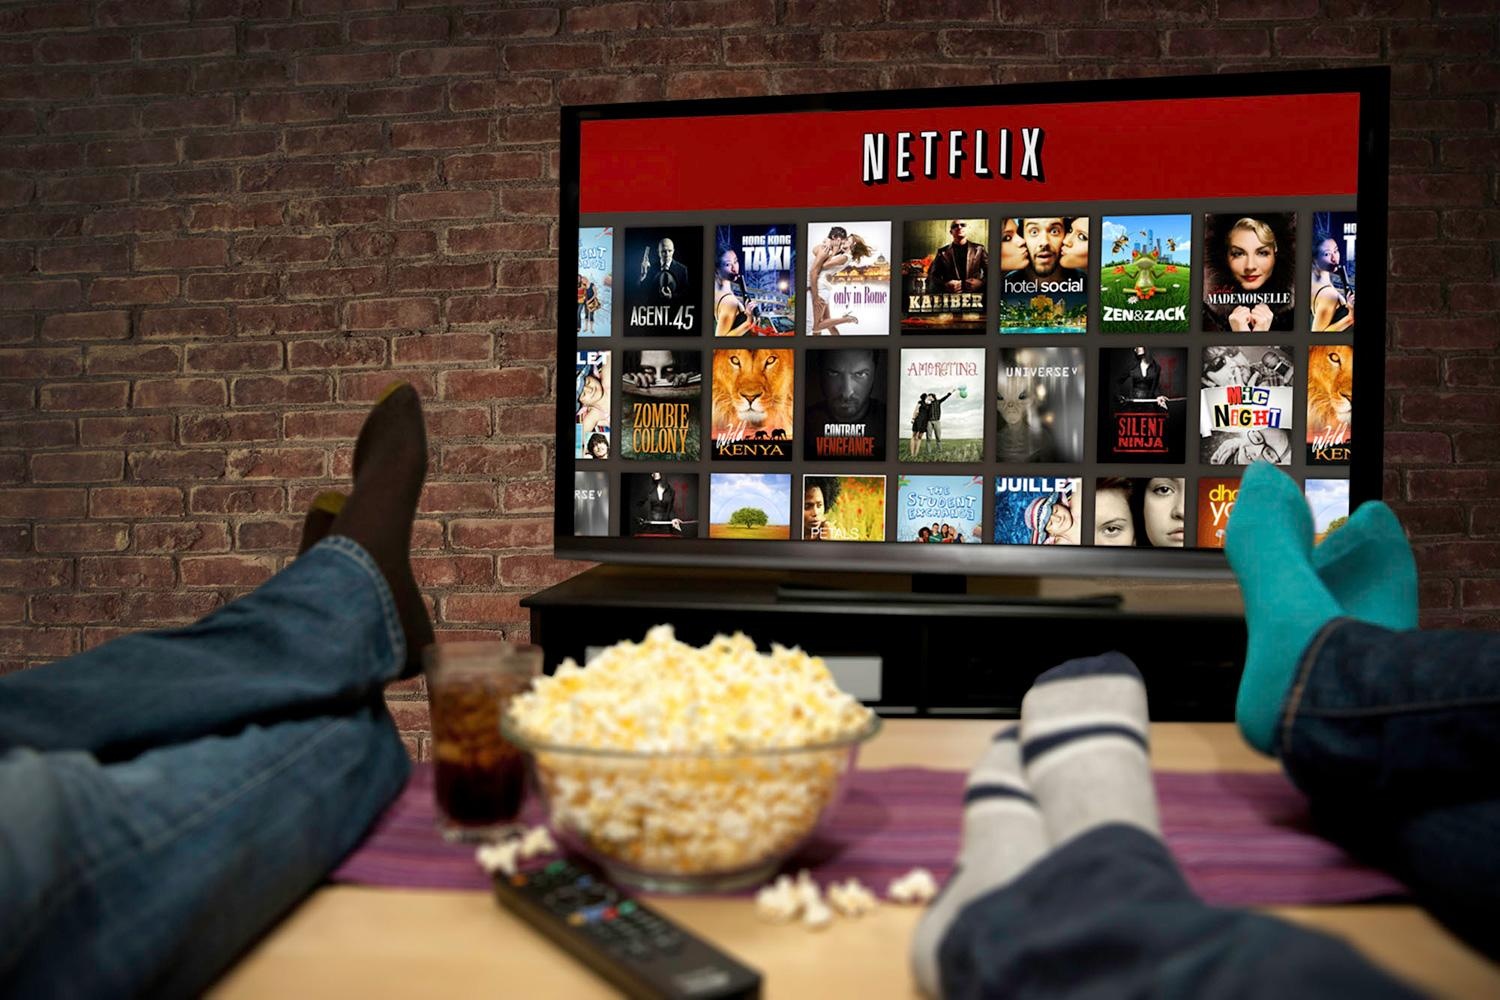 Netflix com propaganda: testamos o serviço, vale a pena?